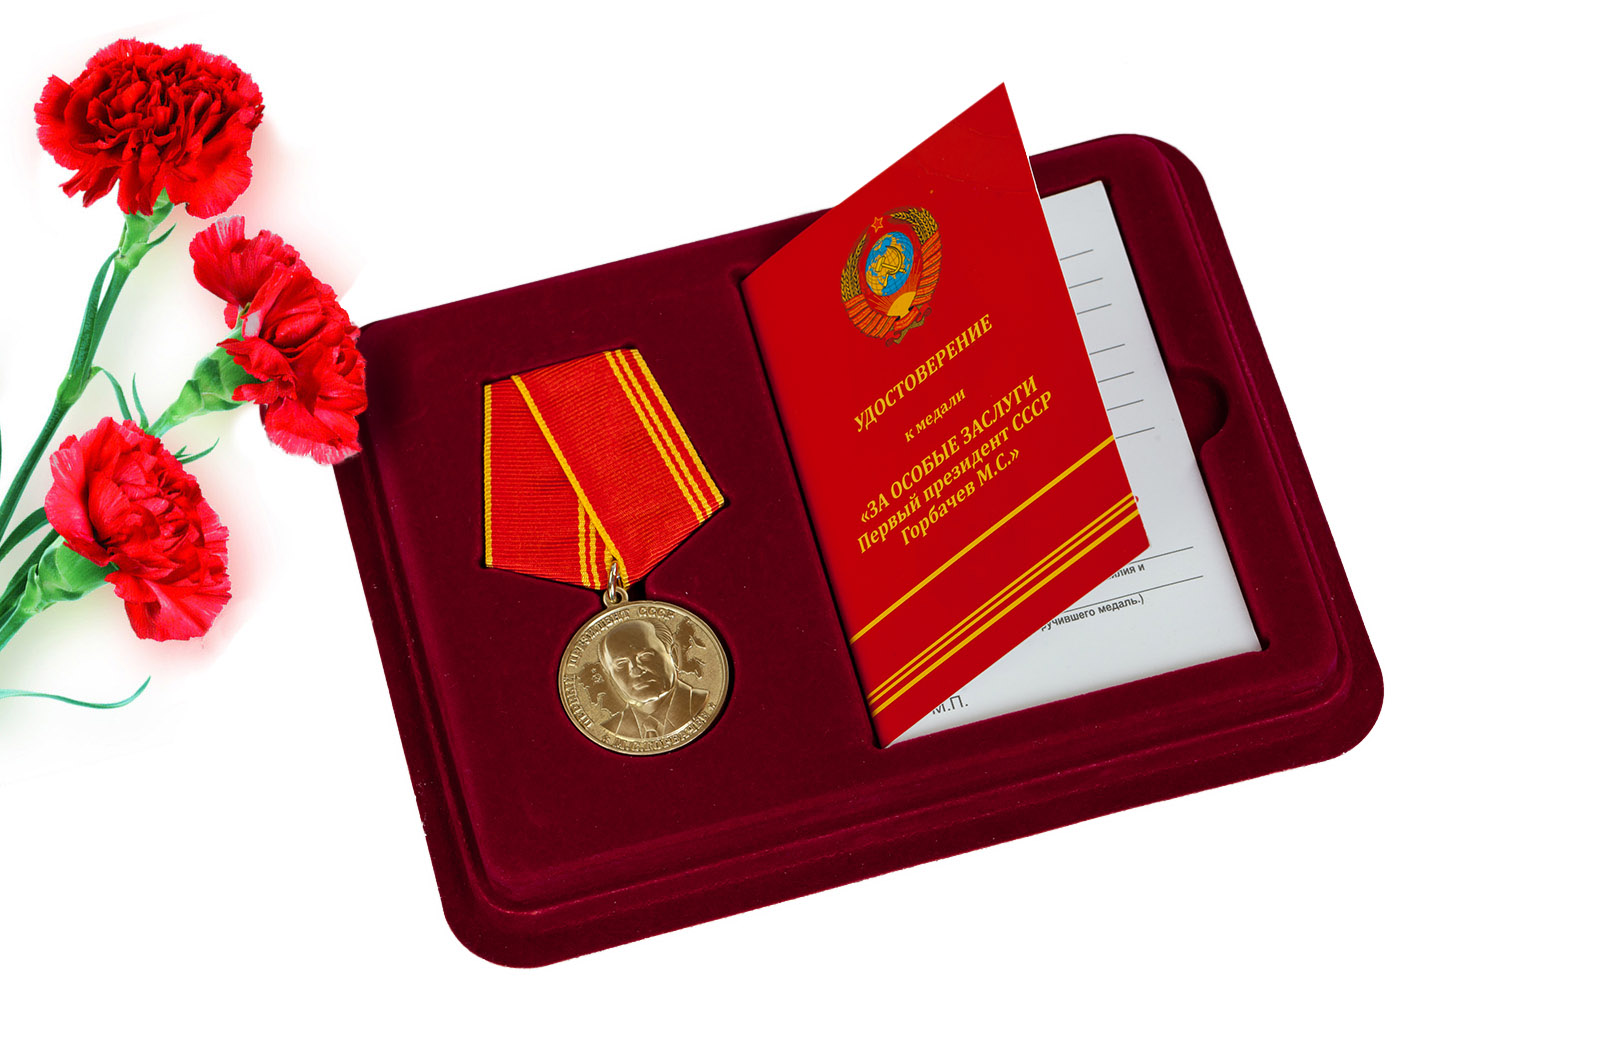 Купить медаль "За особые заслуги" Первый президент СССР Горбачев М.С. с удостоверением